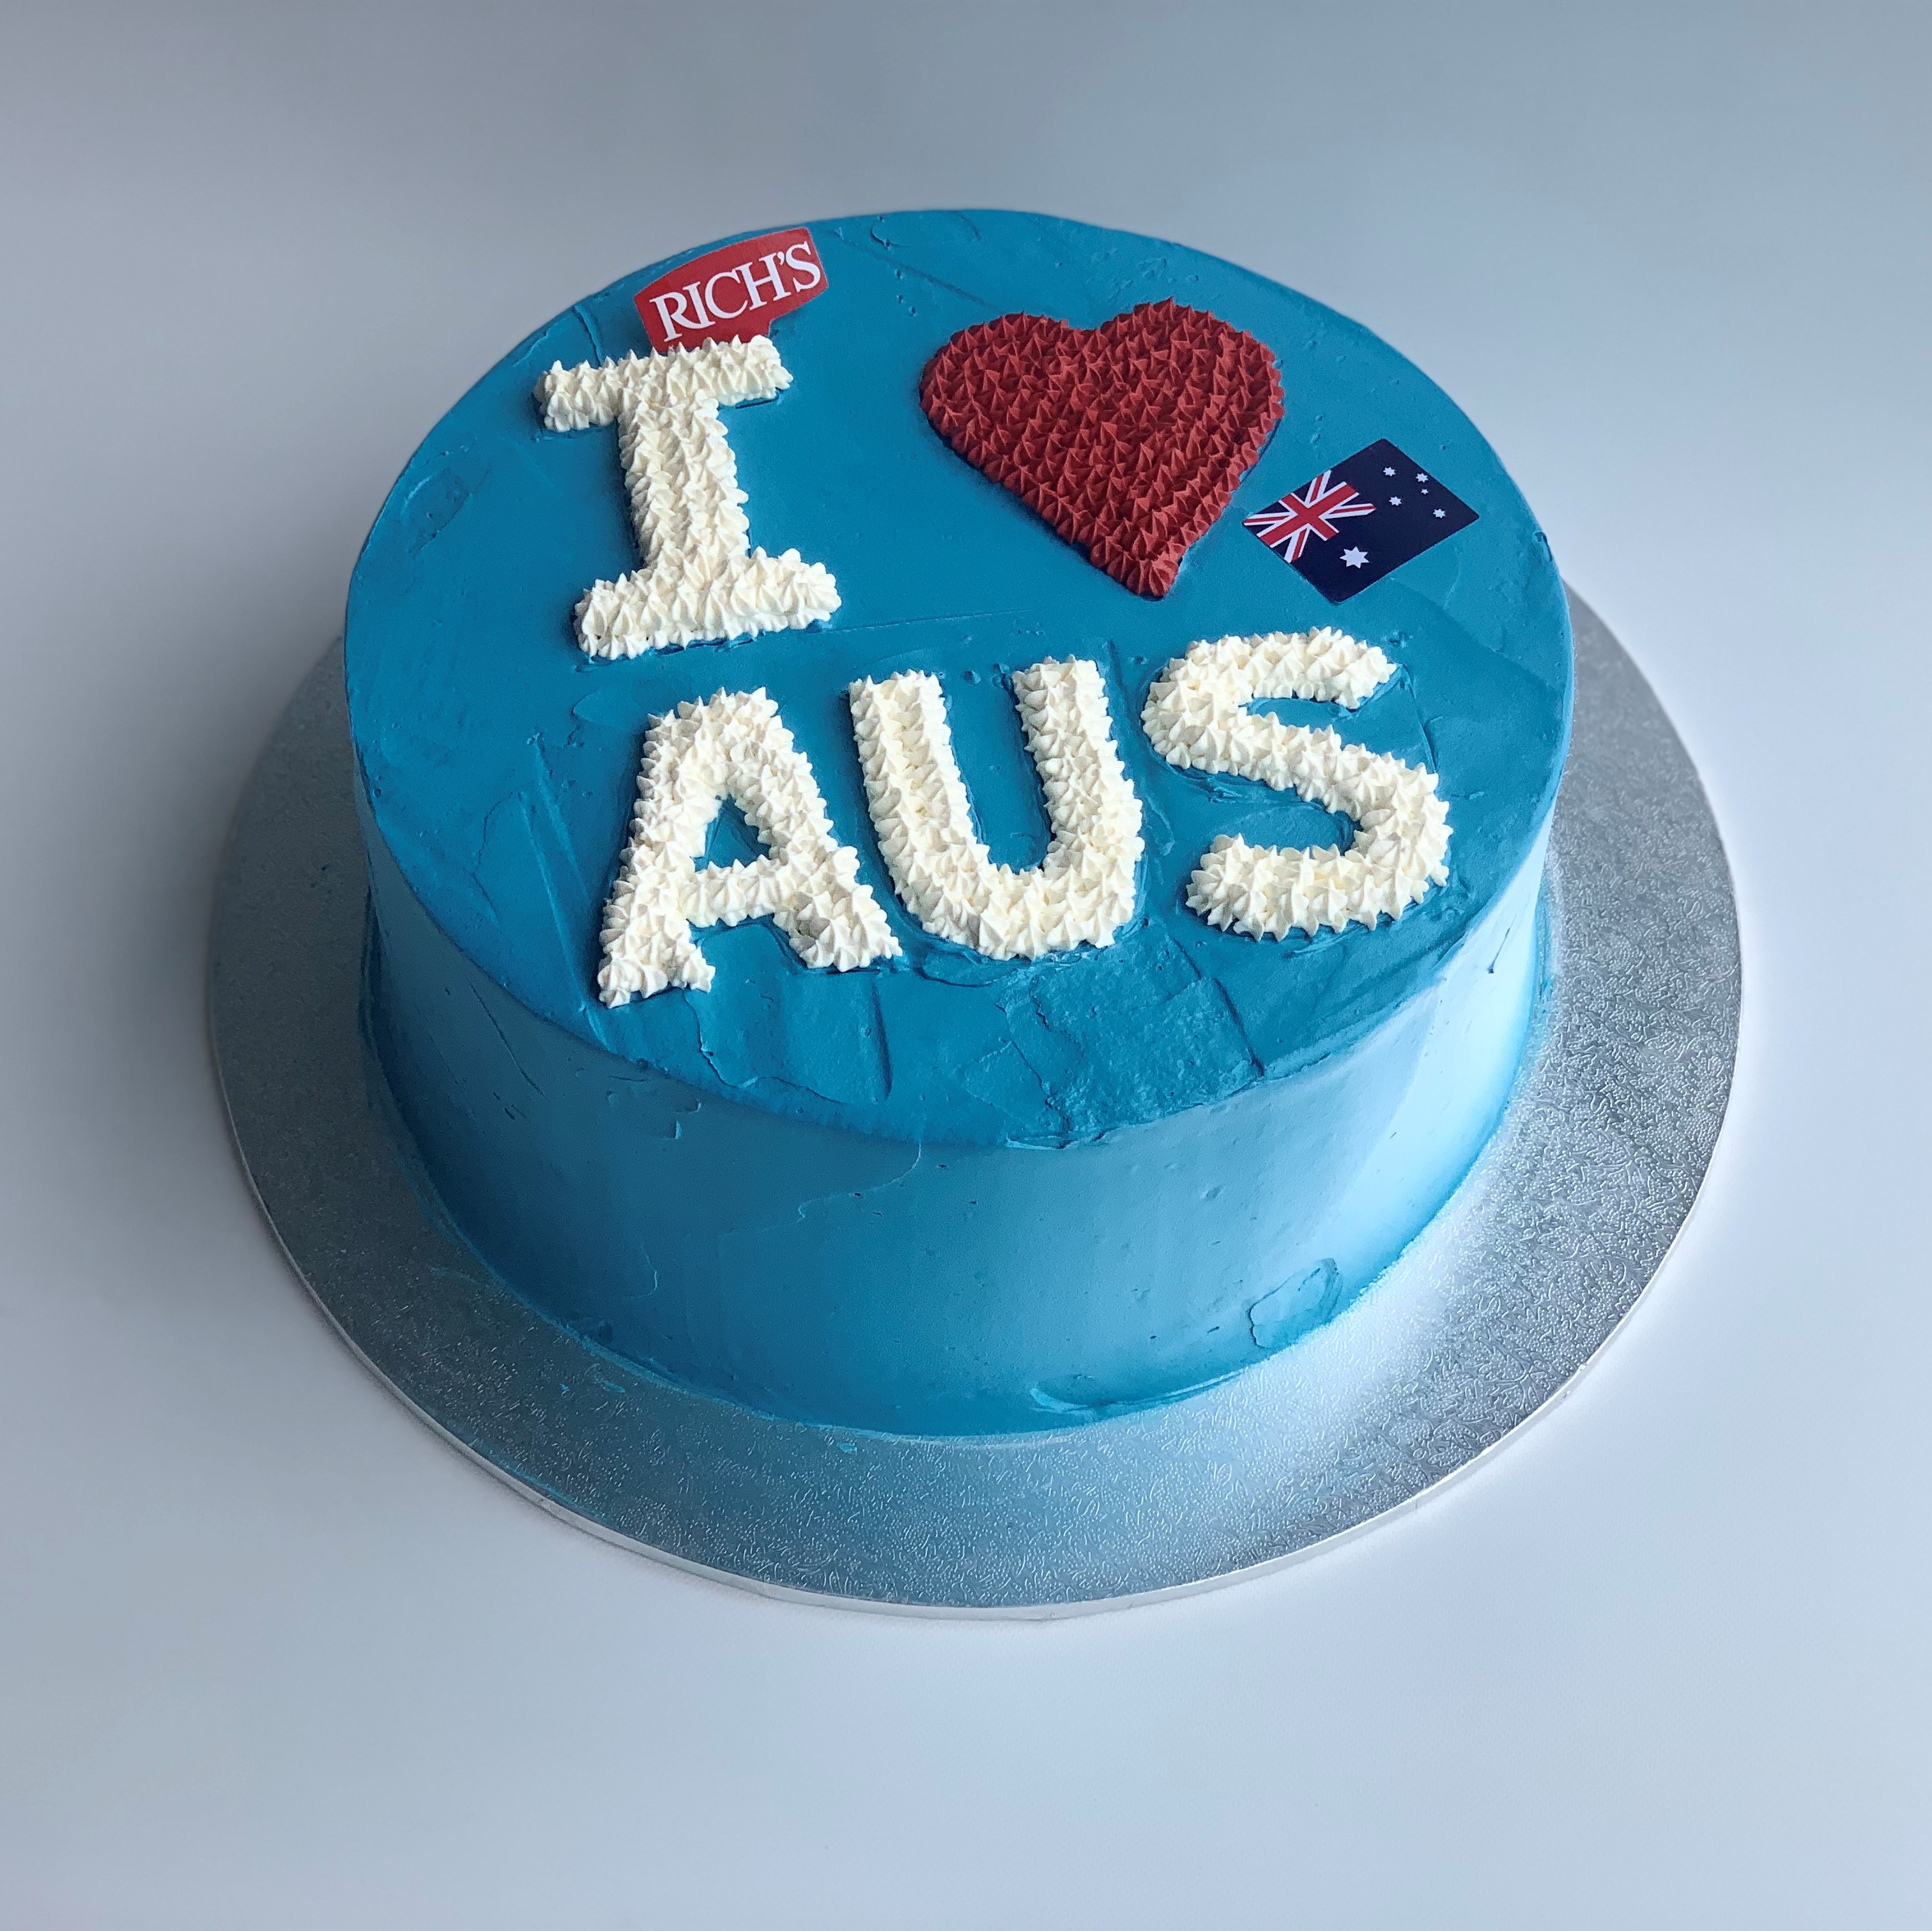 Australia Themed Cake - Bay Tree Cakes